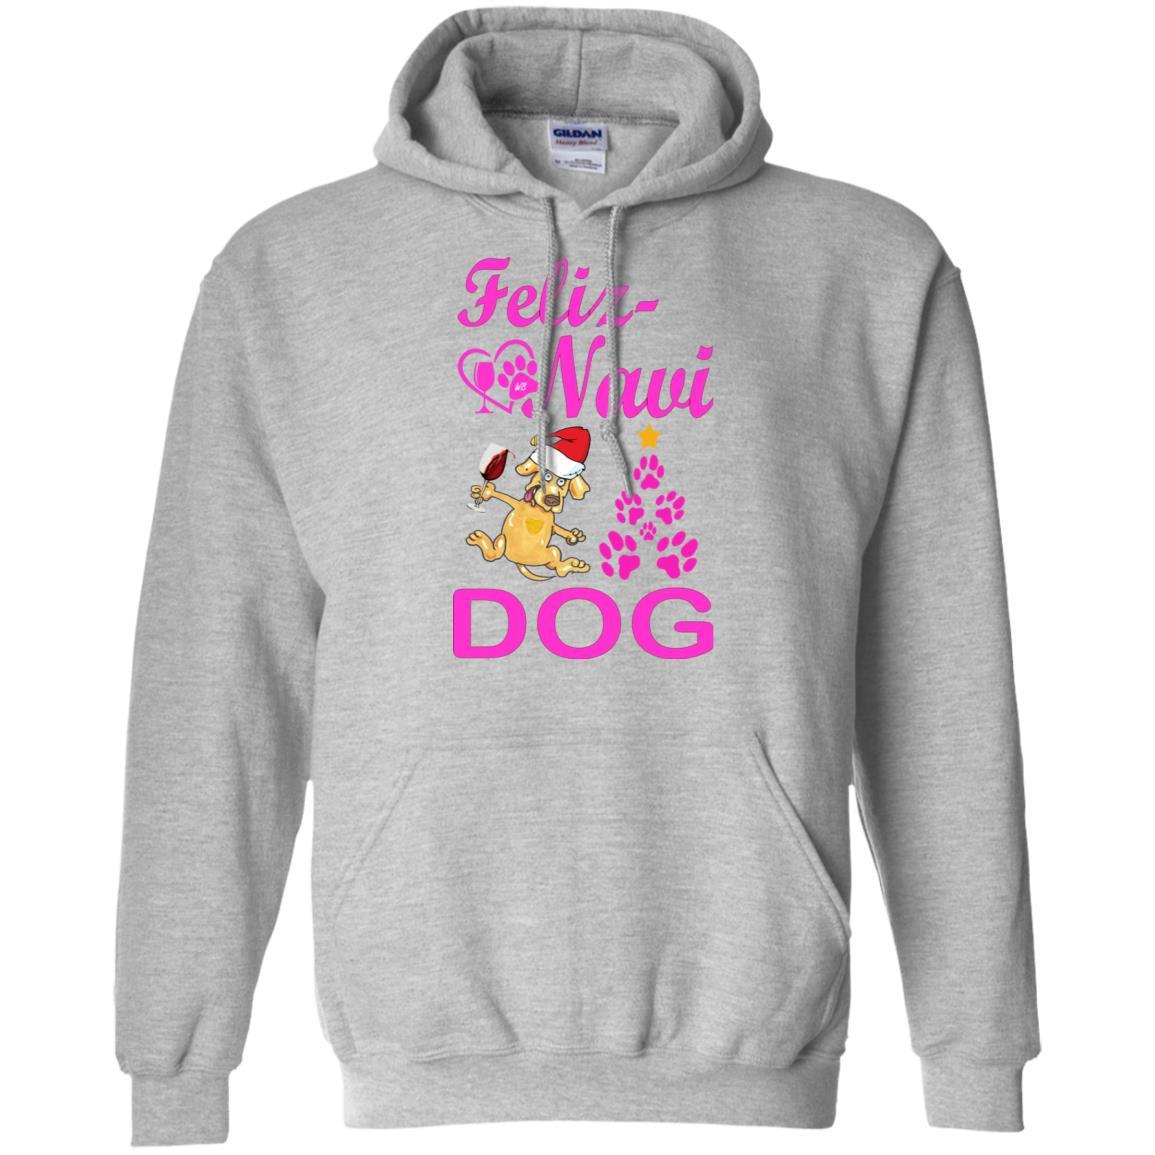 Sweatshirts Sport Grey / S WineyBitches.Co "Feliz Navi Dog" Pullover Hoodie 8 oz. -Pink Lettering WineyBitchesCo